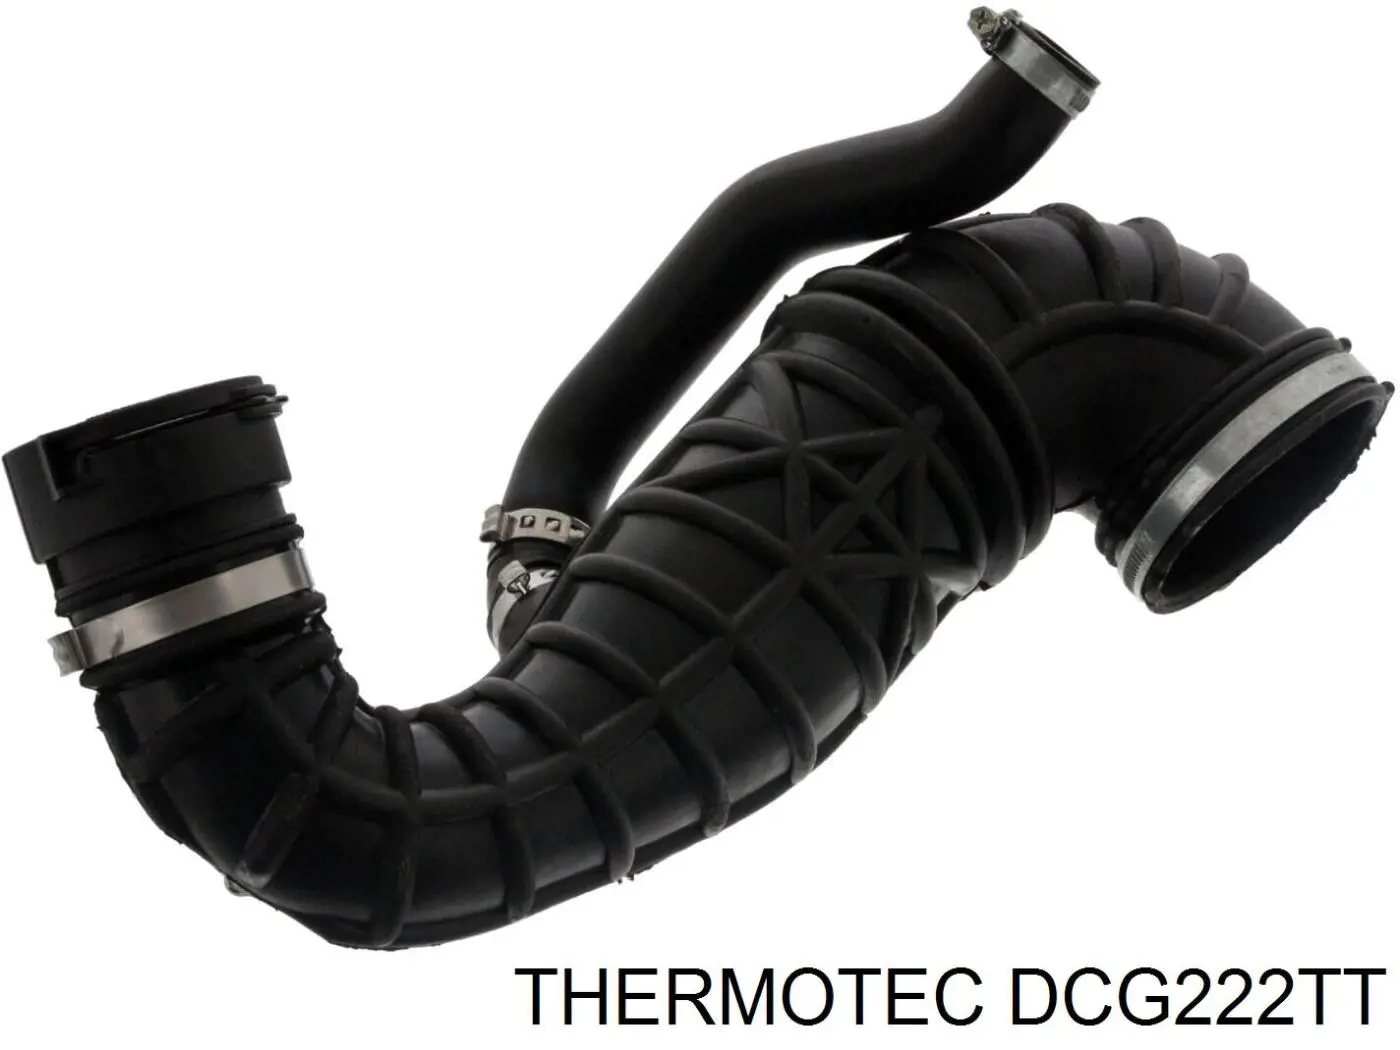 DCG222TT Thermotec tubo flexible de aspiración, cuerpo mariposa